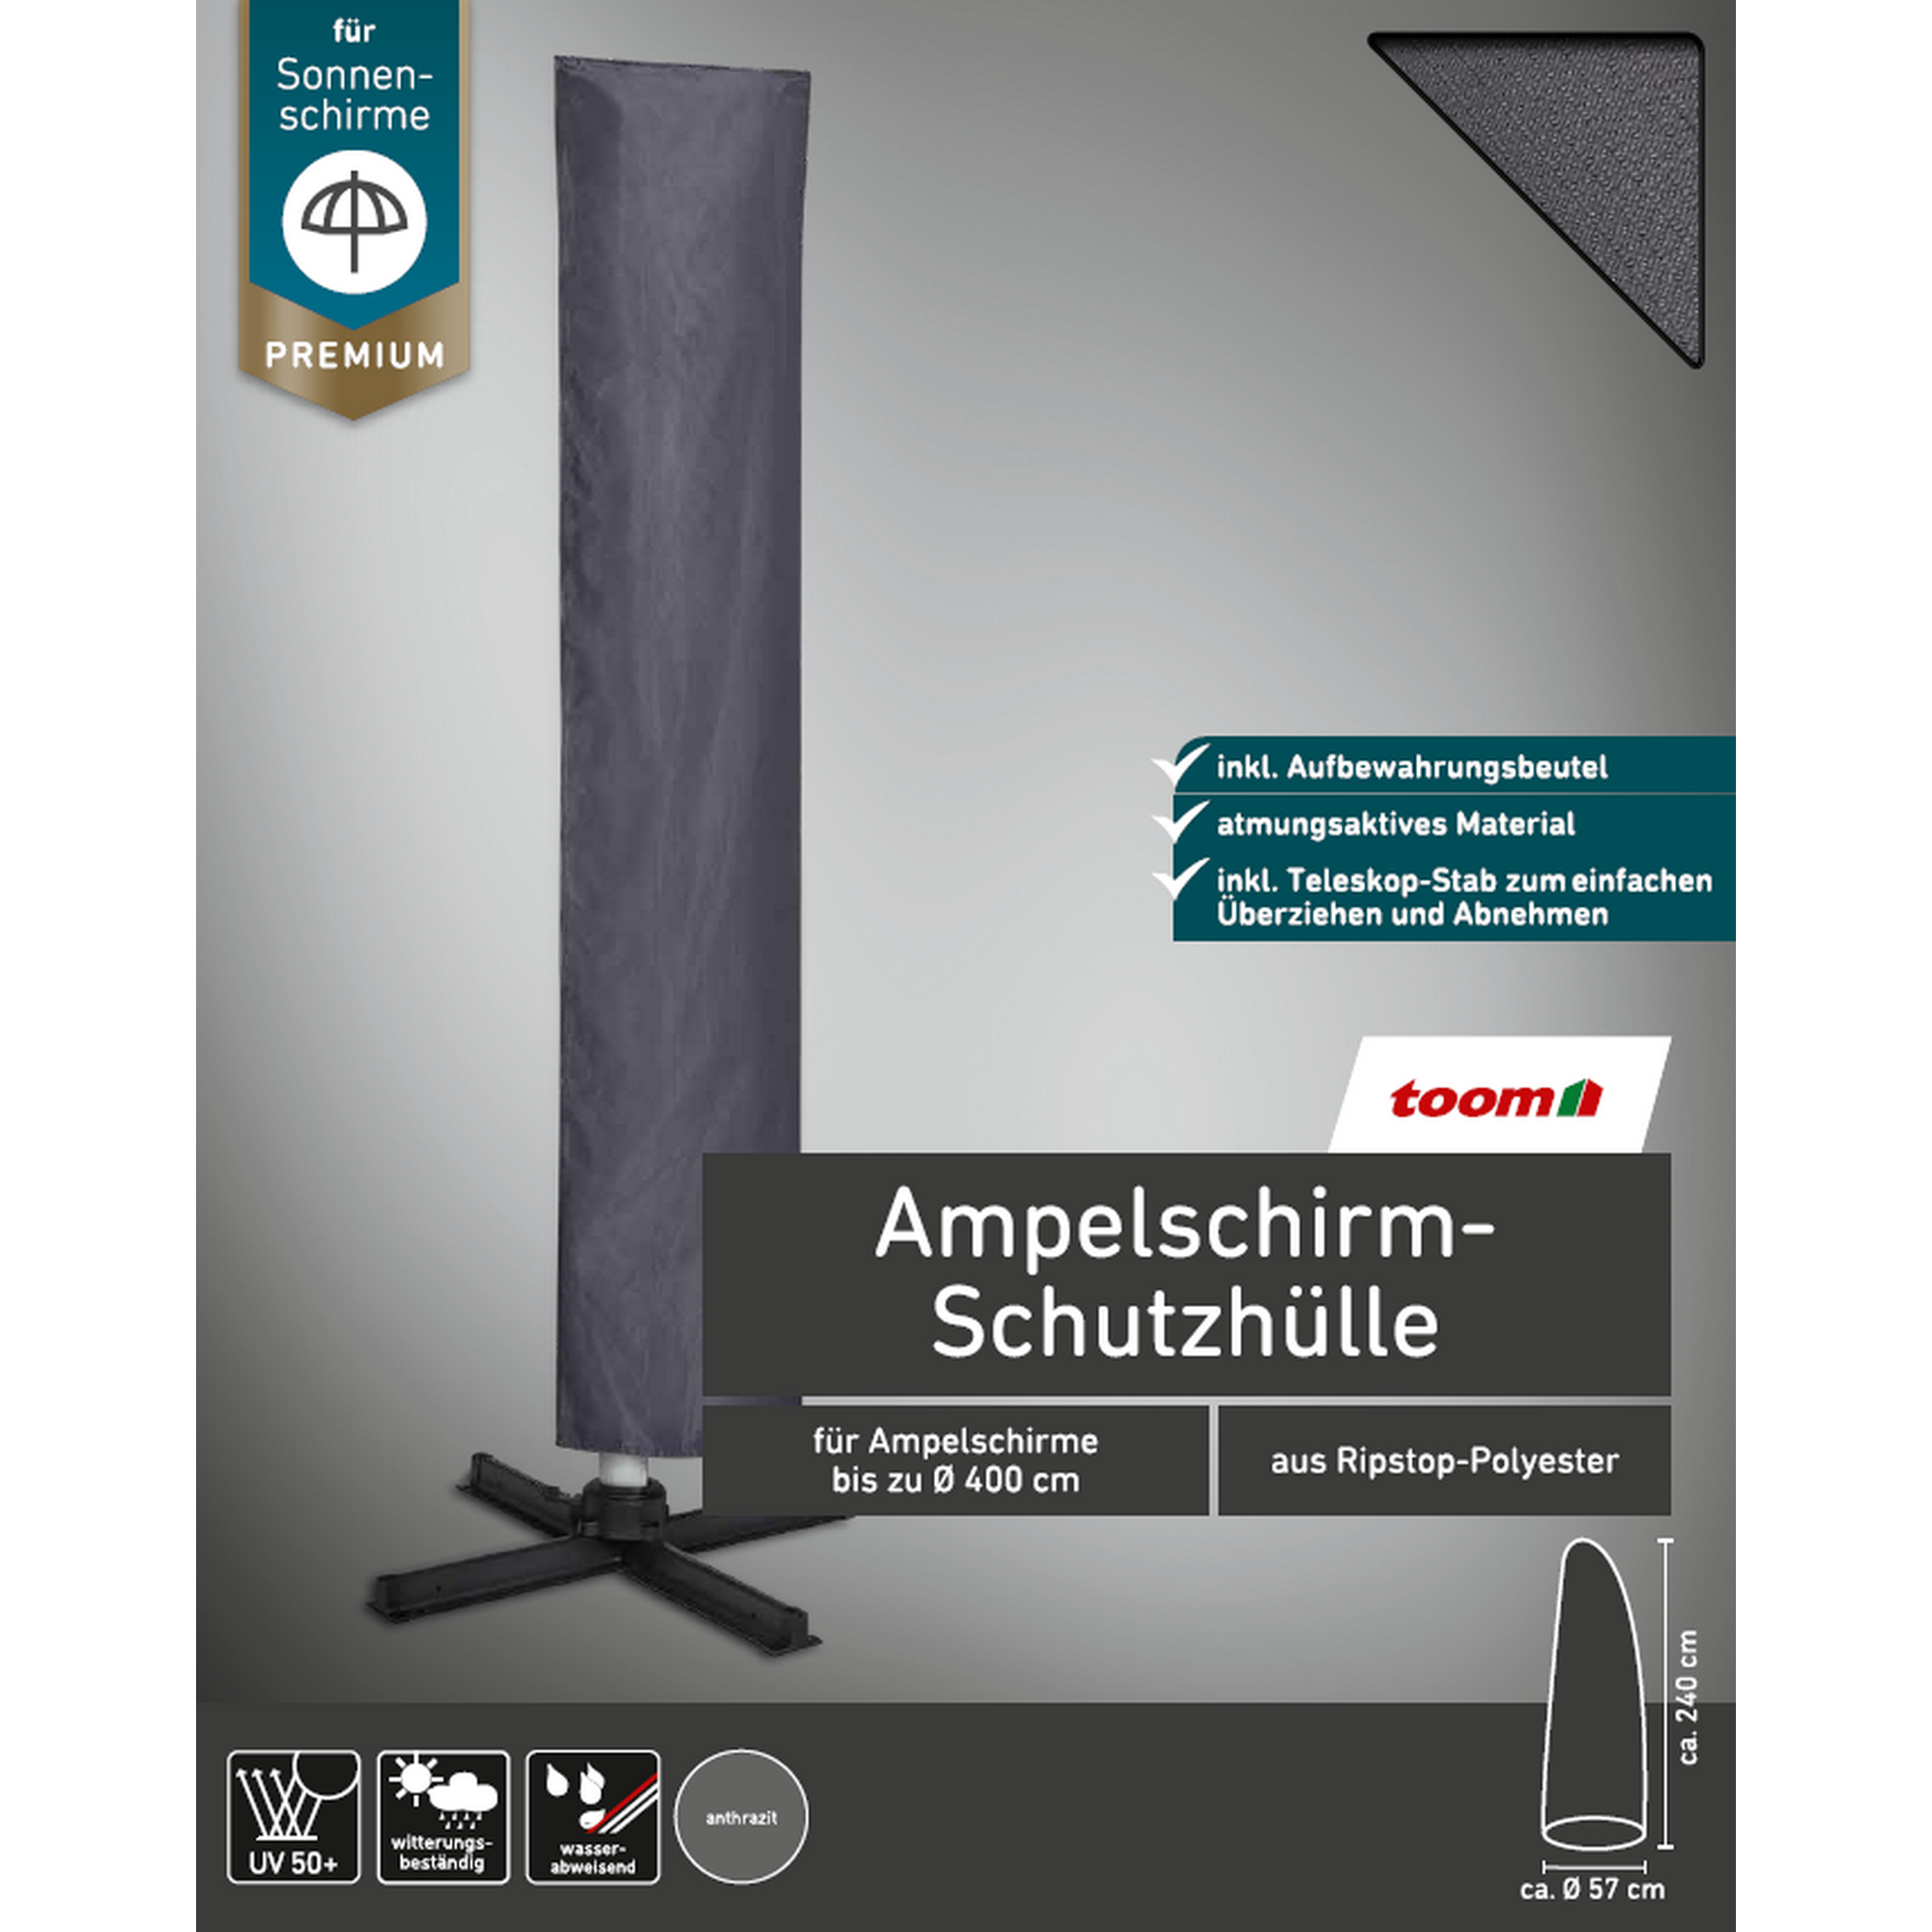 Premium-Schutzhülle für Ampelschirme bis Ø 400 cm + product picture